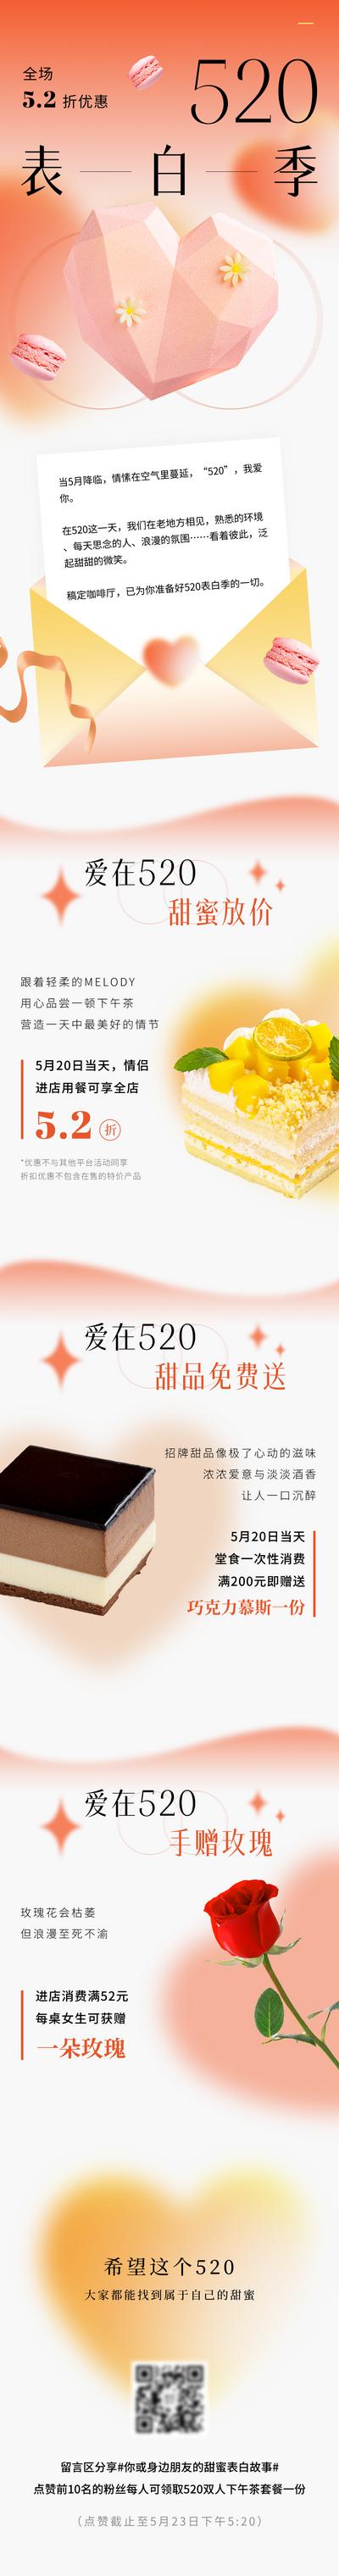 南门网 广告 海报 节日 520 情人节 长图 餐饮 蛋糕 推文